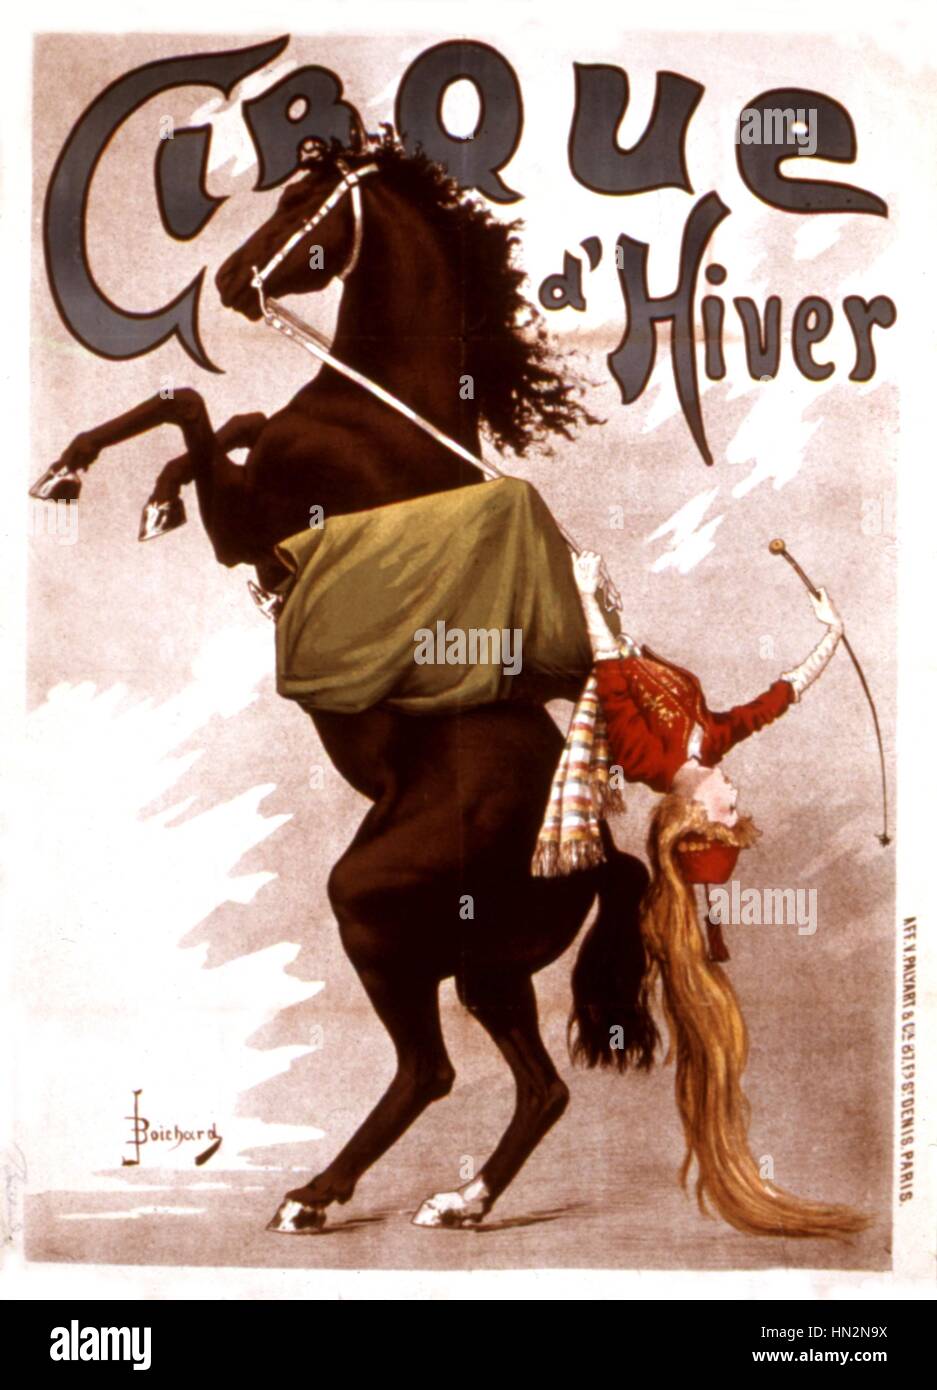 Affiche publicitaire pour le Cirque d'hiver 19e siècle France Banque D'Images